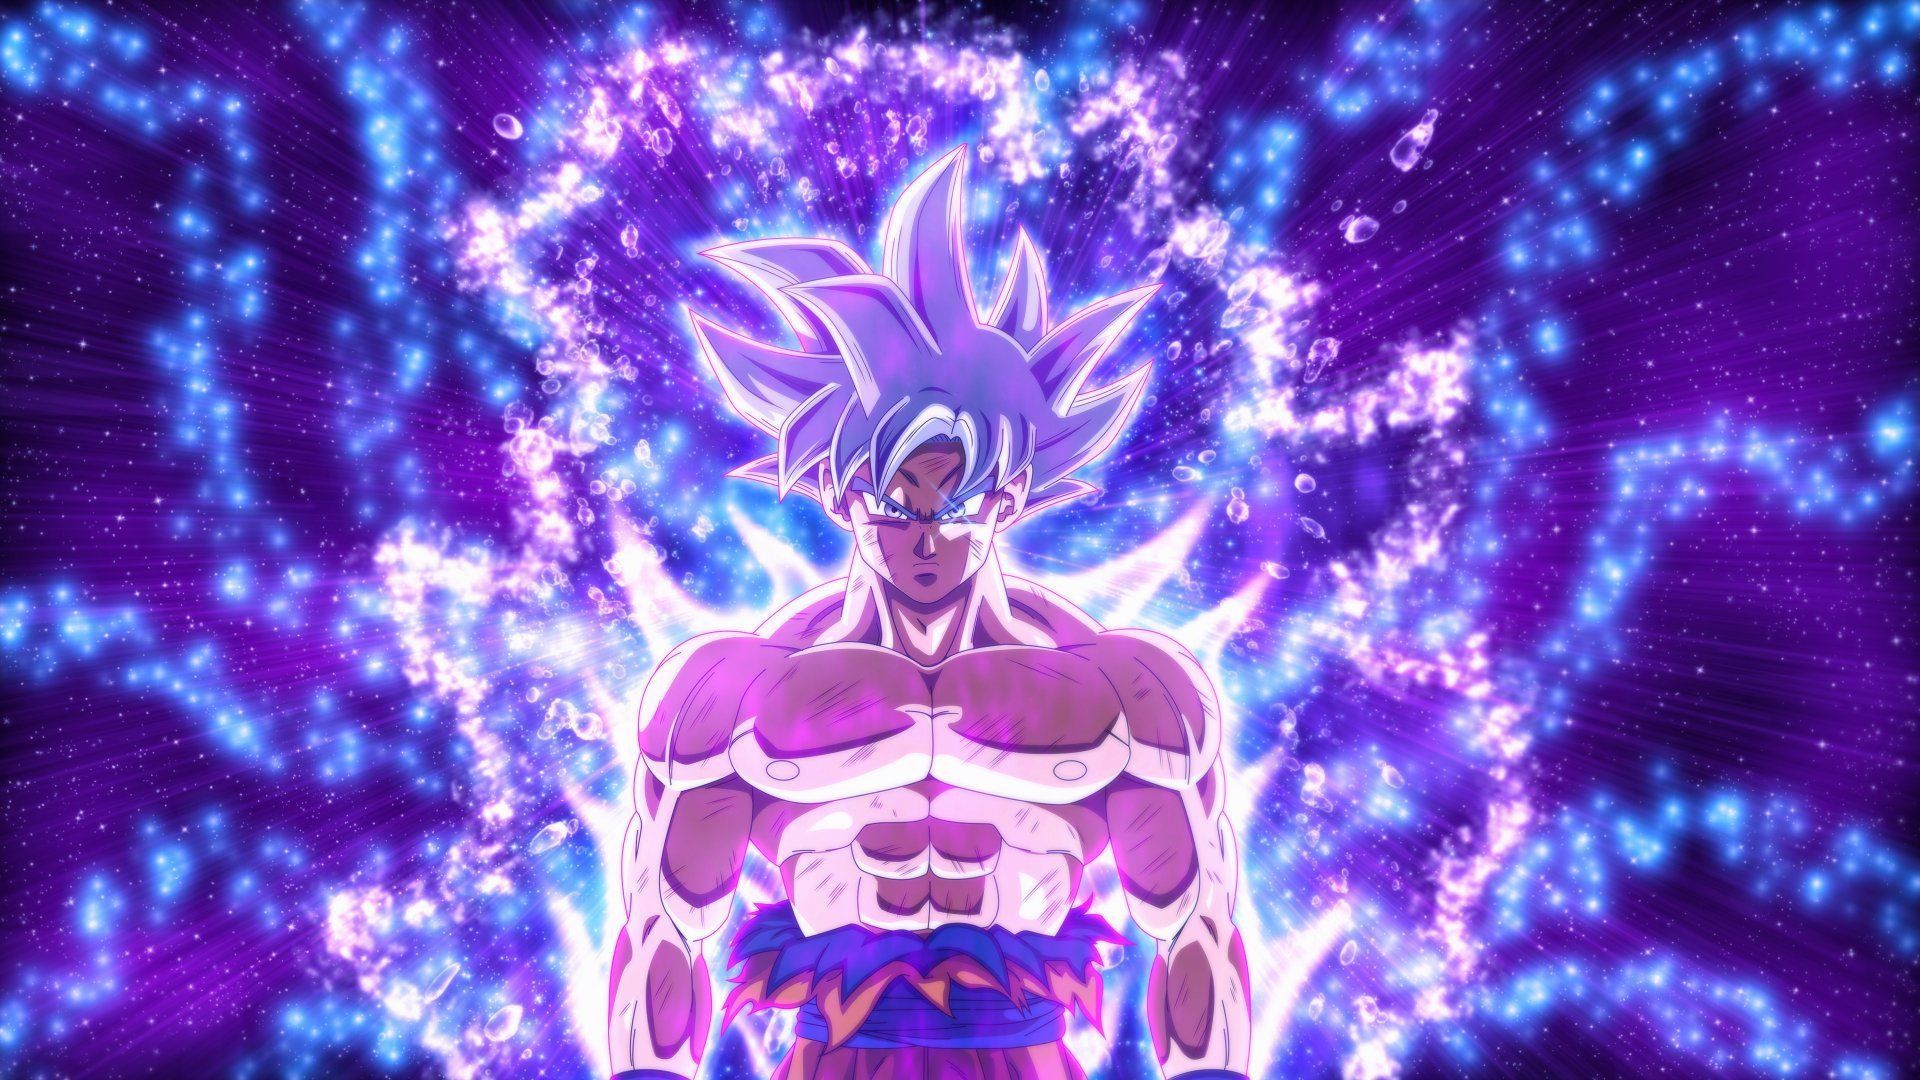 Goku Wallpaper And Image